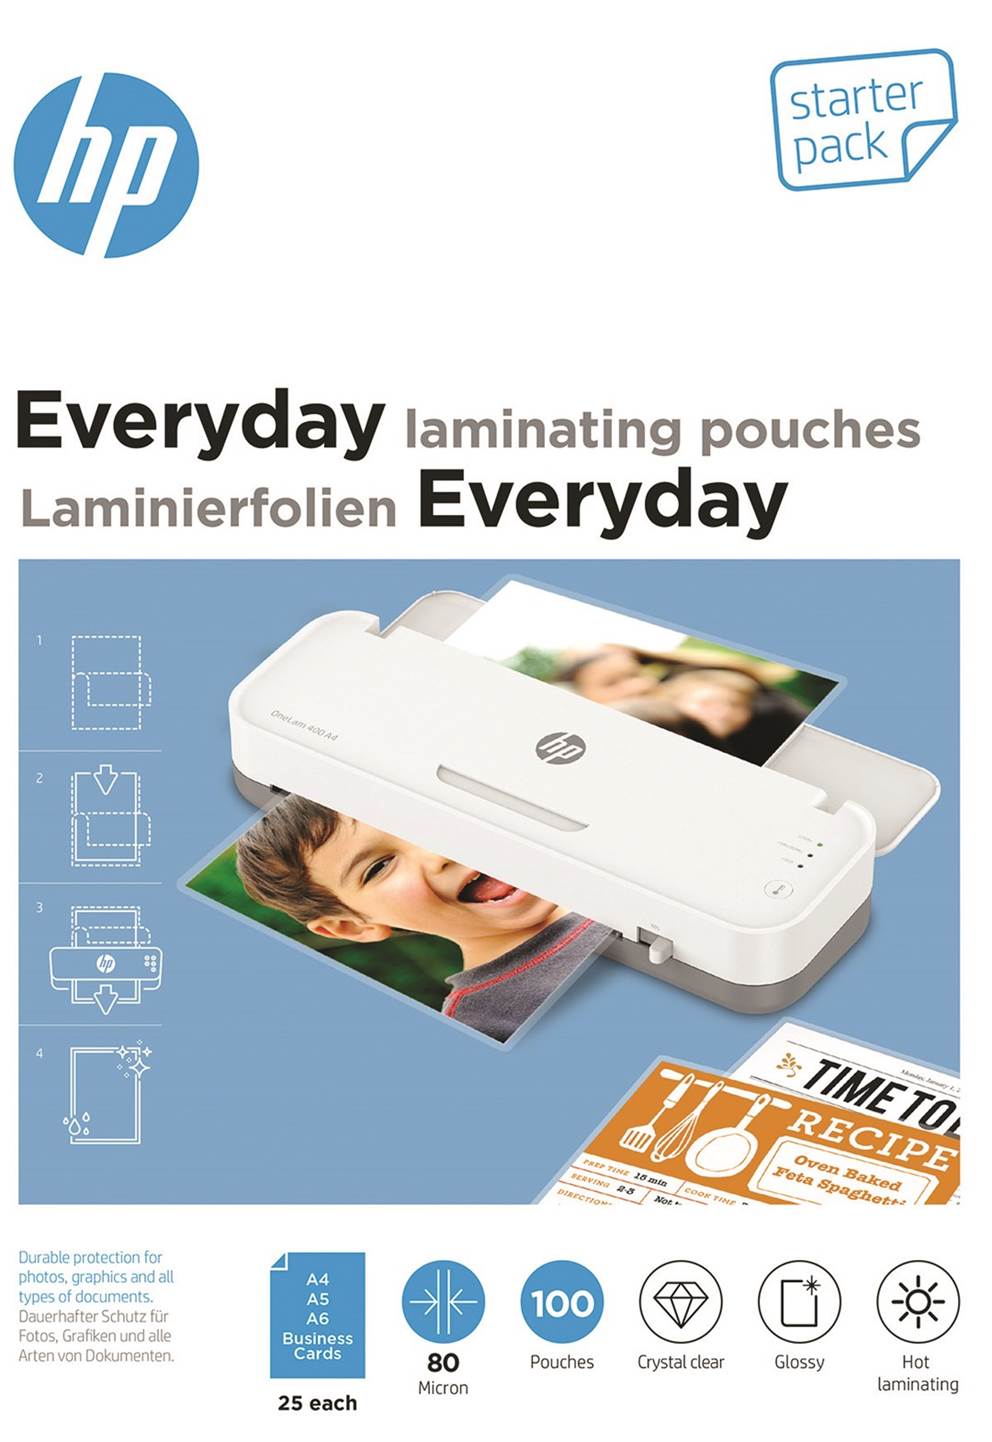 Folie laminacyjne HP EVERYDAY, 25 x (A4, A5, A6, B-Card), 80 mic, 100 szt., przezroczyste/połysk